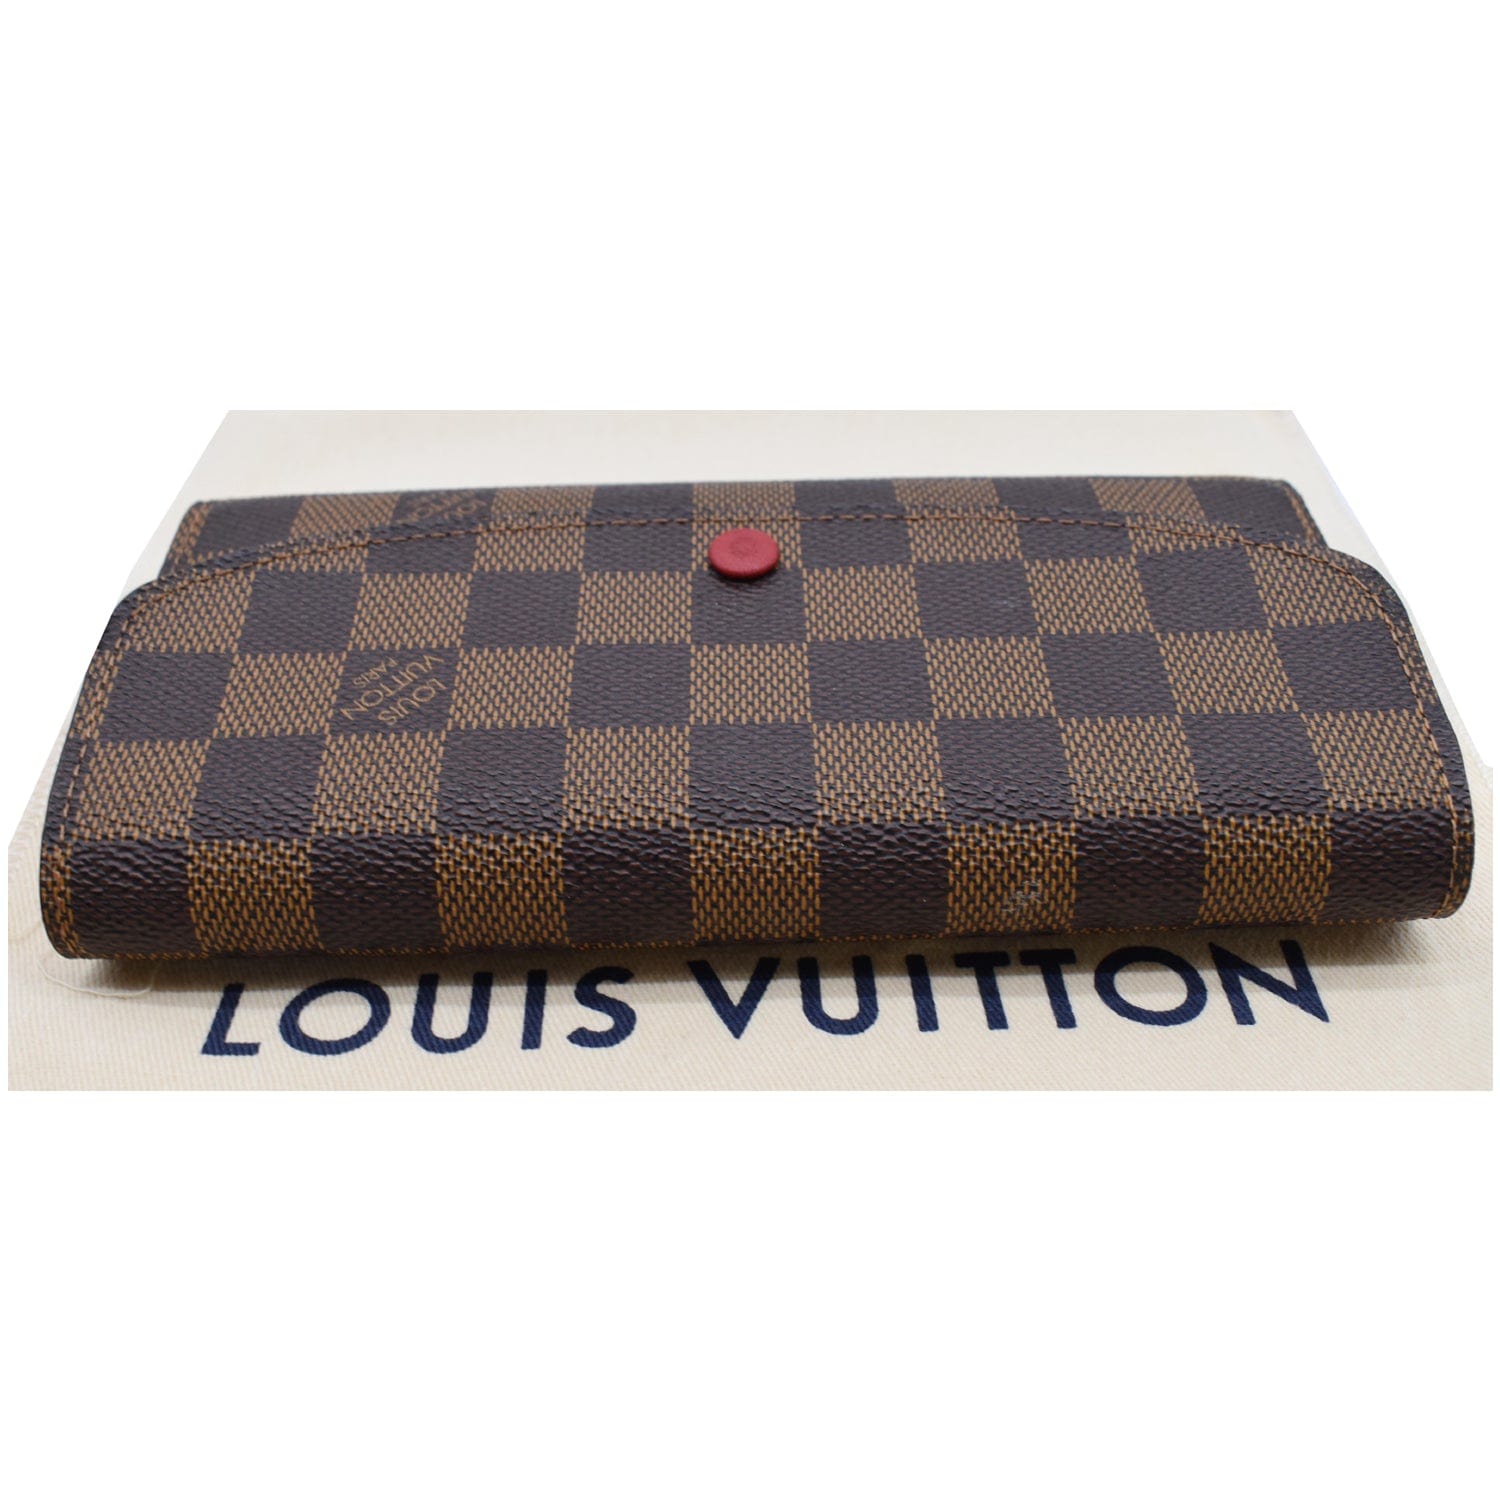 Louis Vuitton Emilie Wallet Damier Ebene - THE PURSE AFFAIR